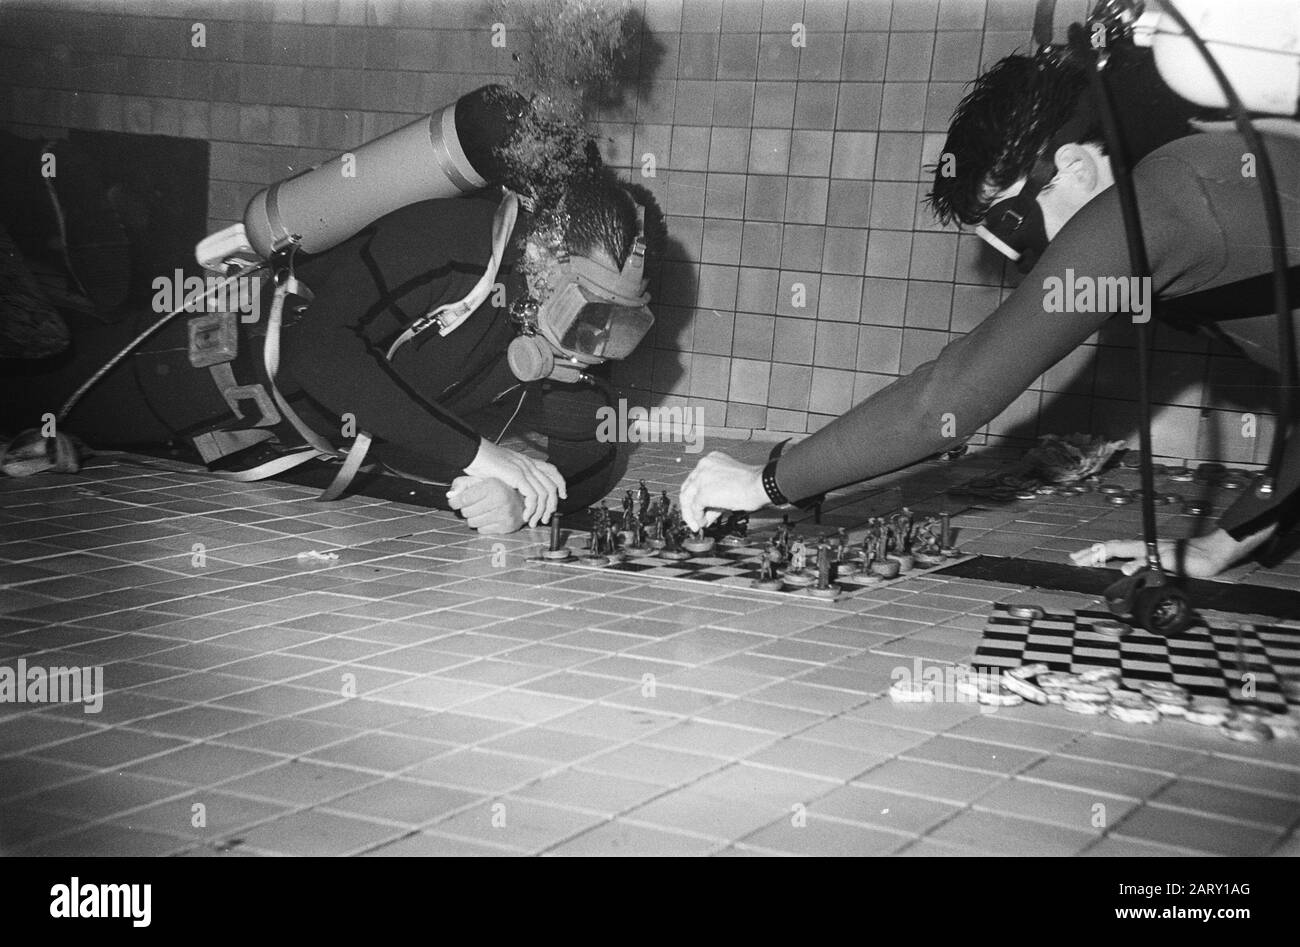 Les membres de l'équipe de plongée Amsterdam veulent rester sous l'eau pendant 36 heures Deux plongeurs jouent aux échecs sous l'eau Date: 27 août 1983 lieu: Amsterdam, Noord-Holland mots clés: Plongeurs, plongée, disques, échecs Banque D'Images